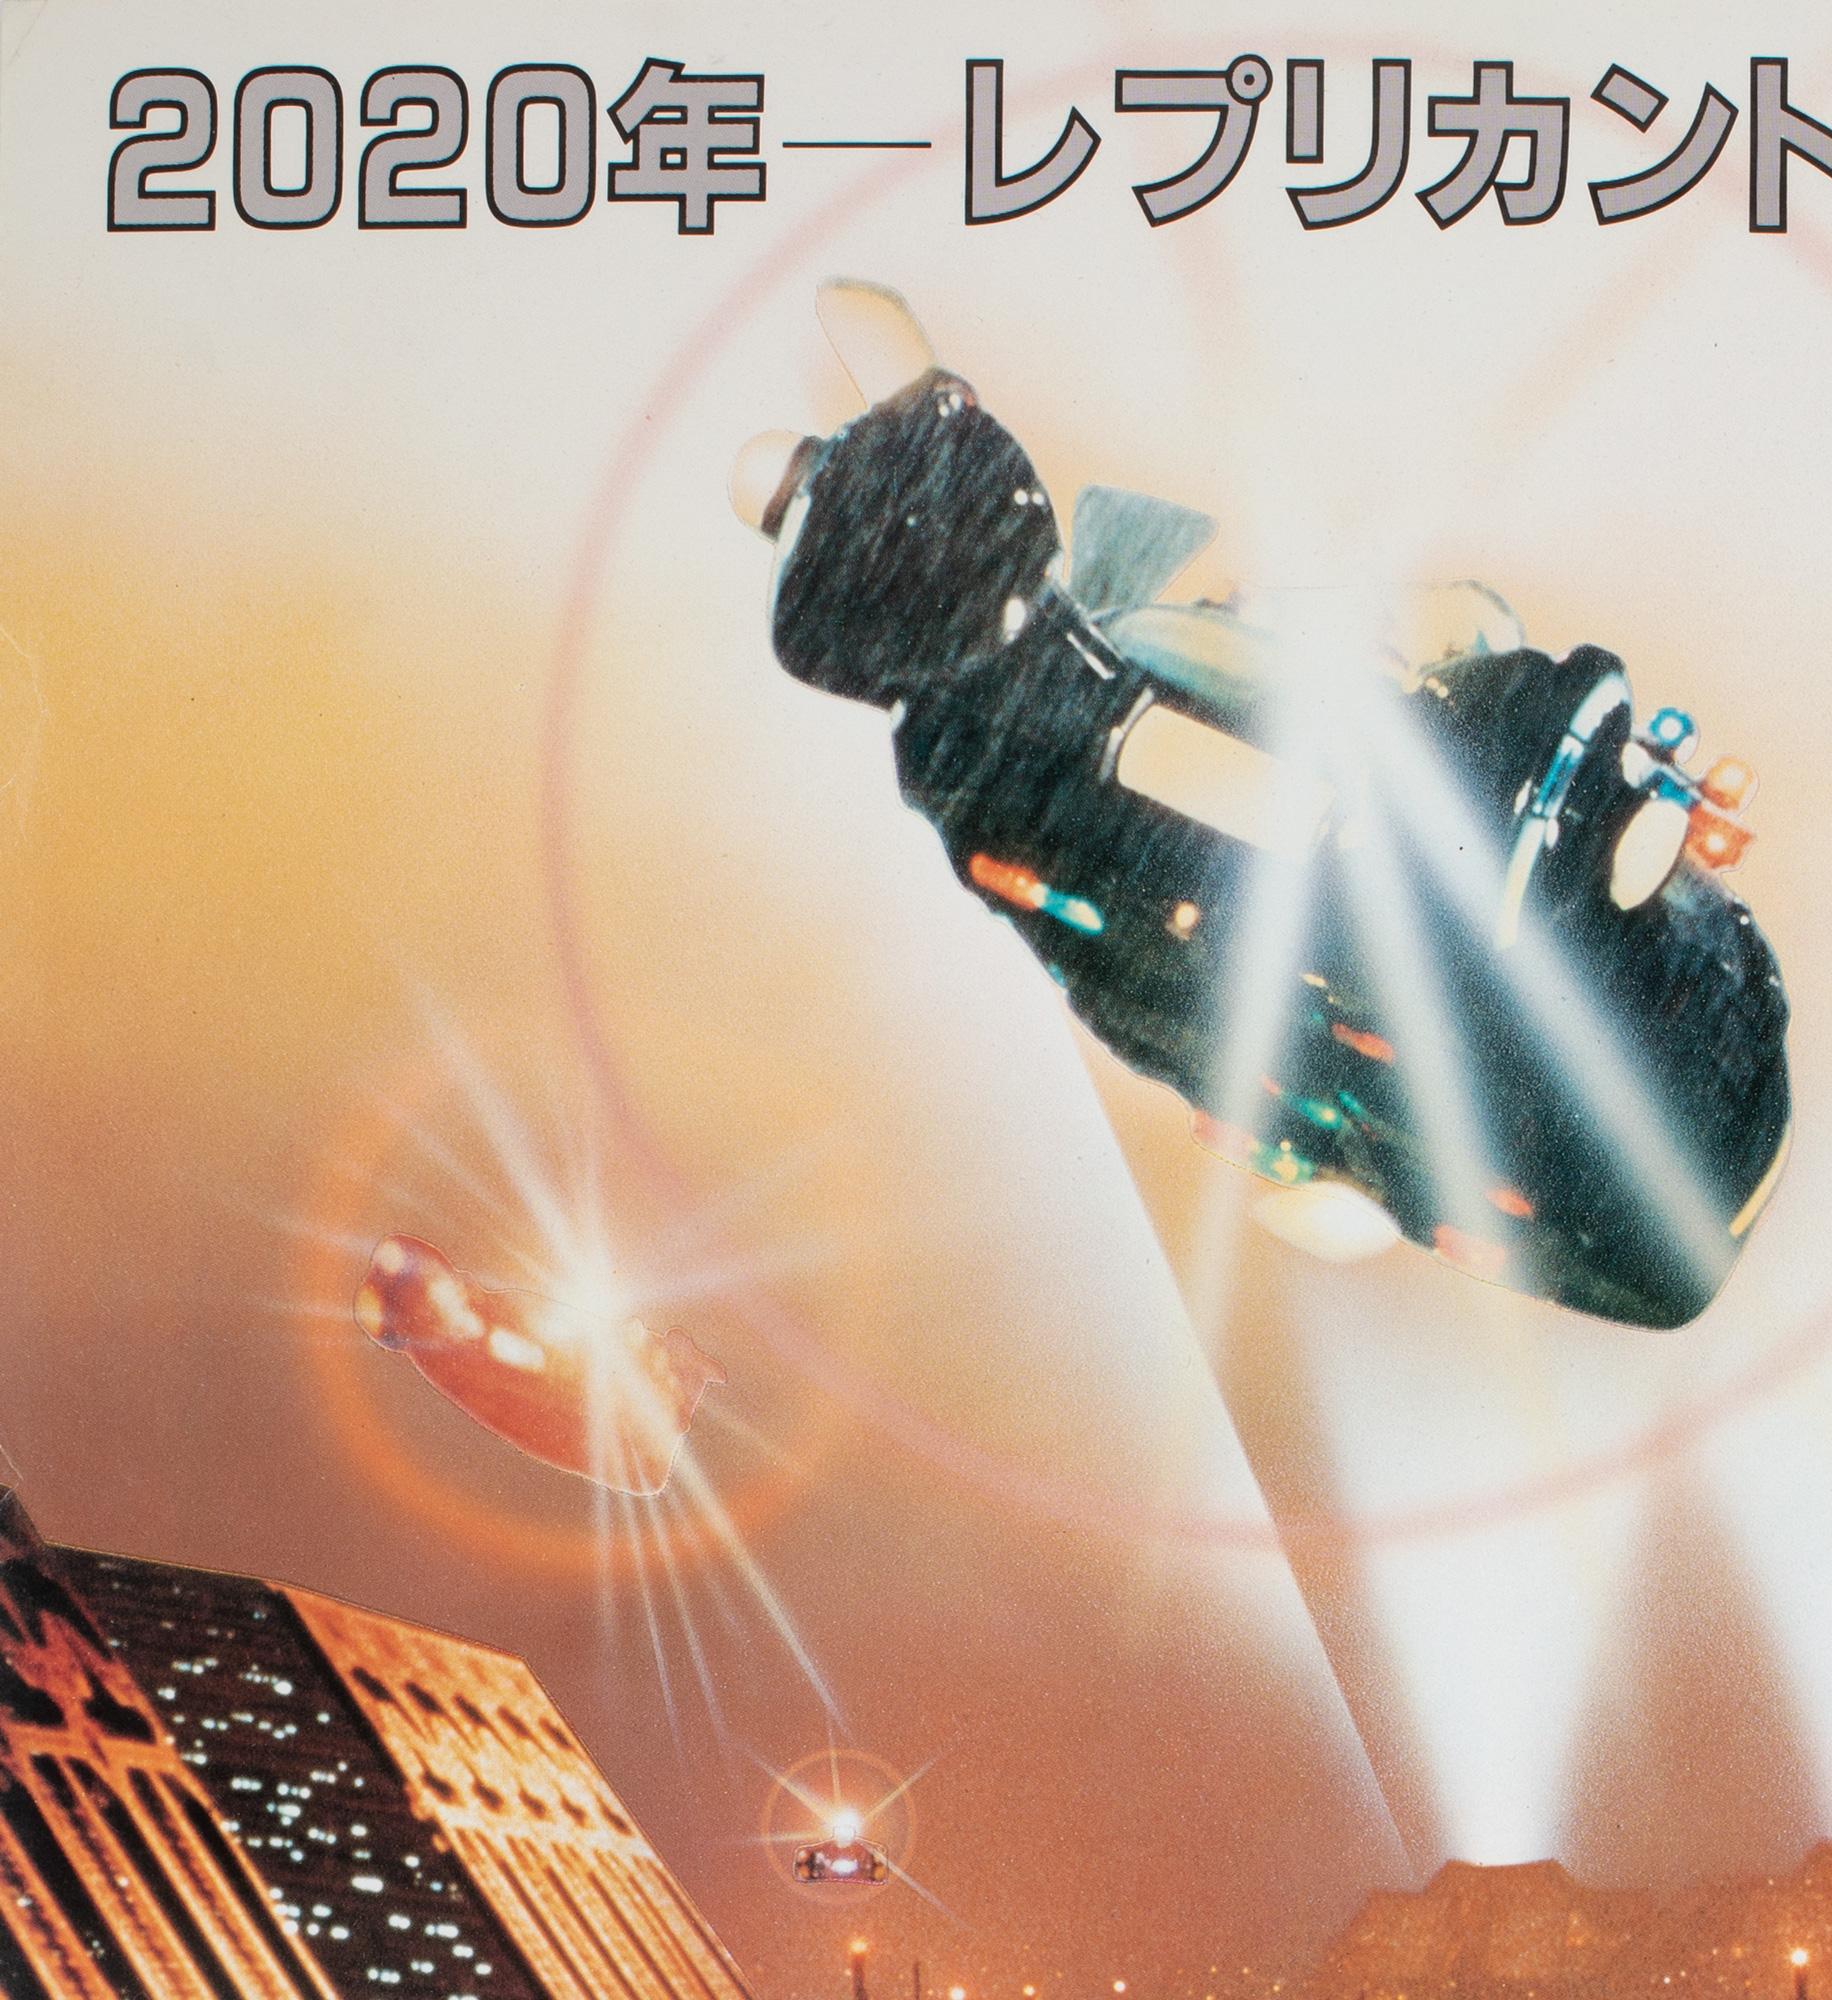 blade runner japanese poster